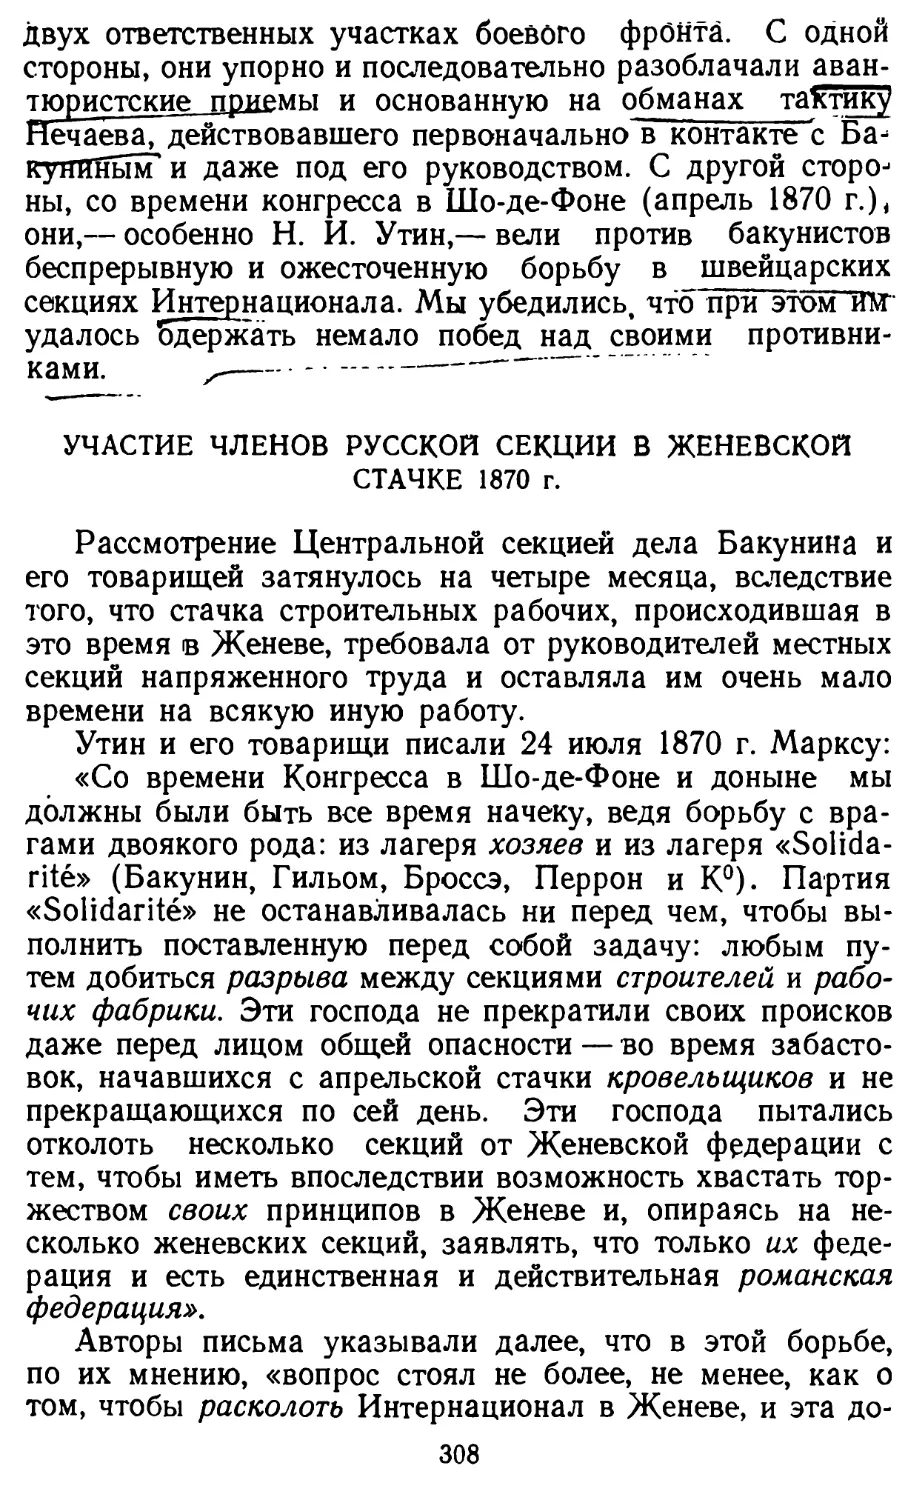 Участие членов Русской секции в женевской стачке 1870 г.